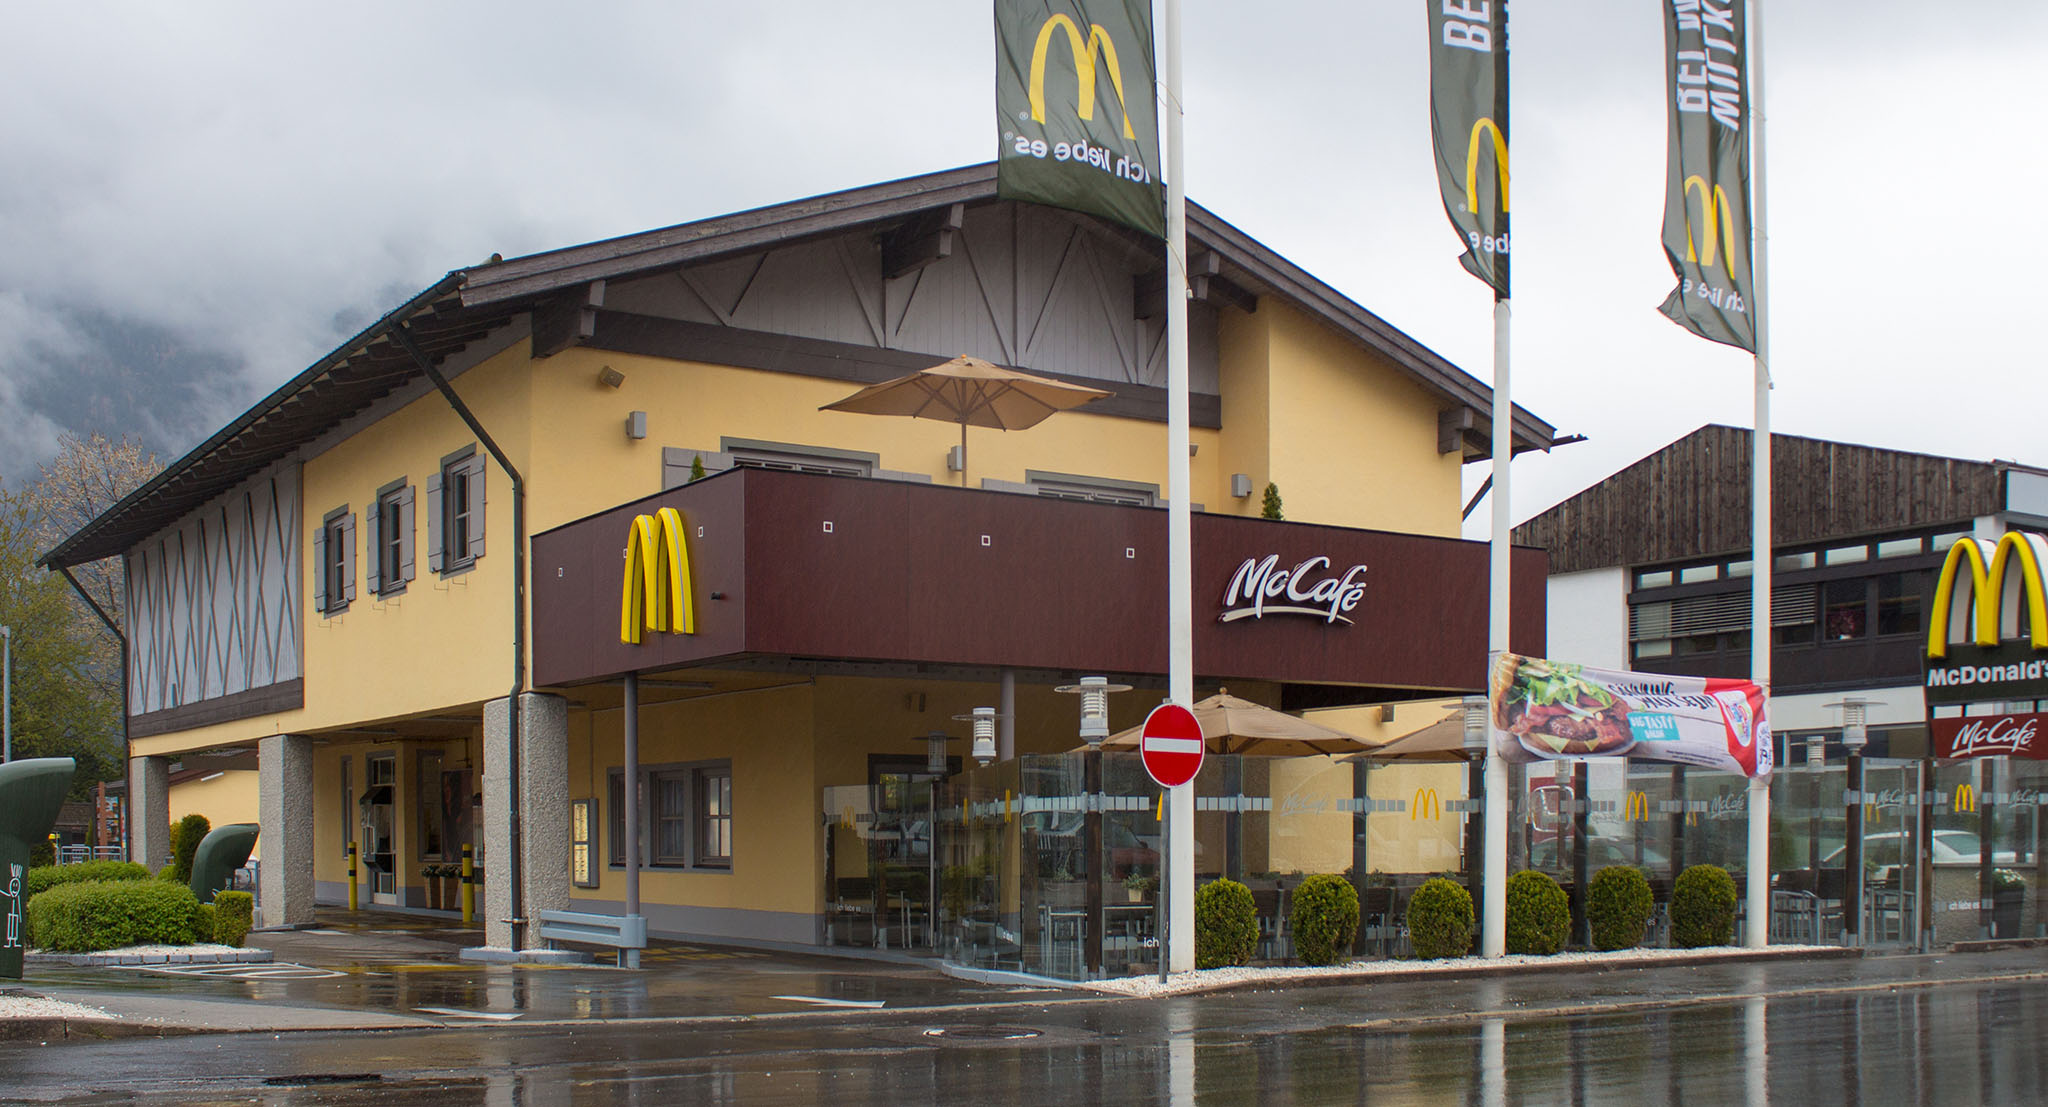 Das McDonald’s-Restaurant in Garmisch-Partenkirchen (Hauptstraße)